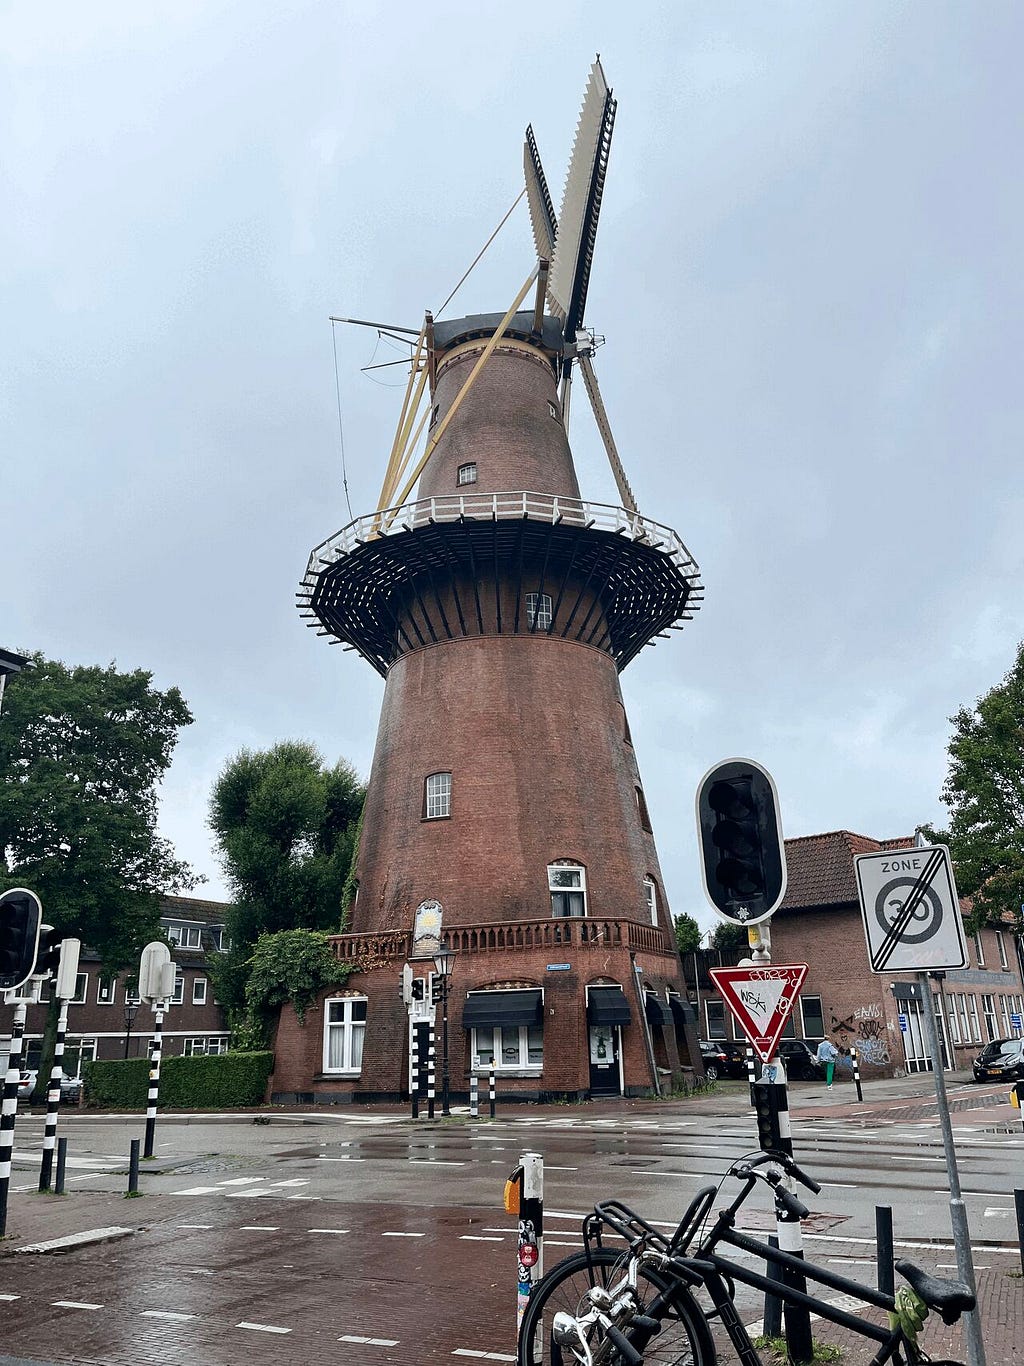 A photograph of a windmill in Utrecht.